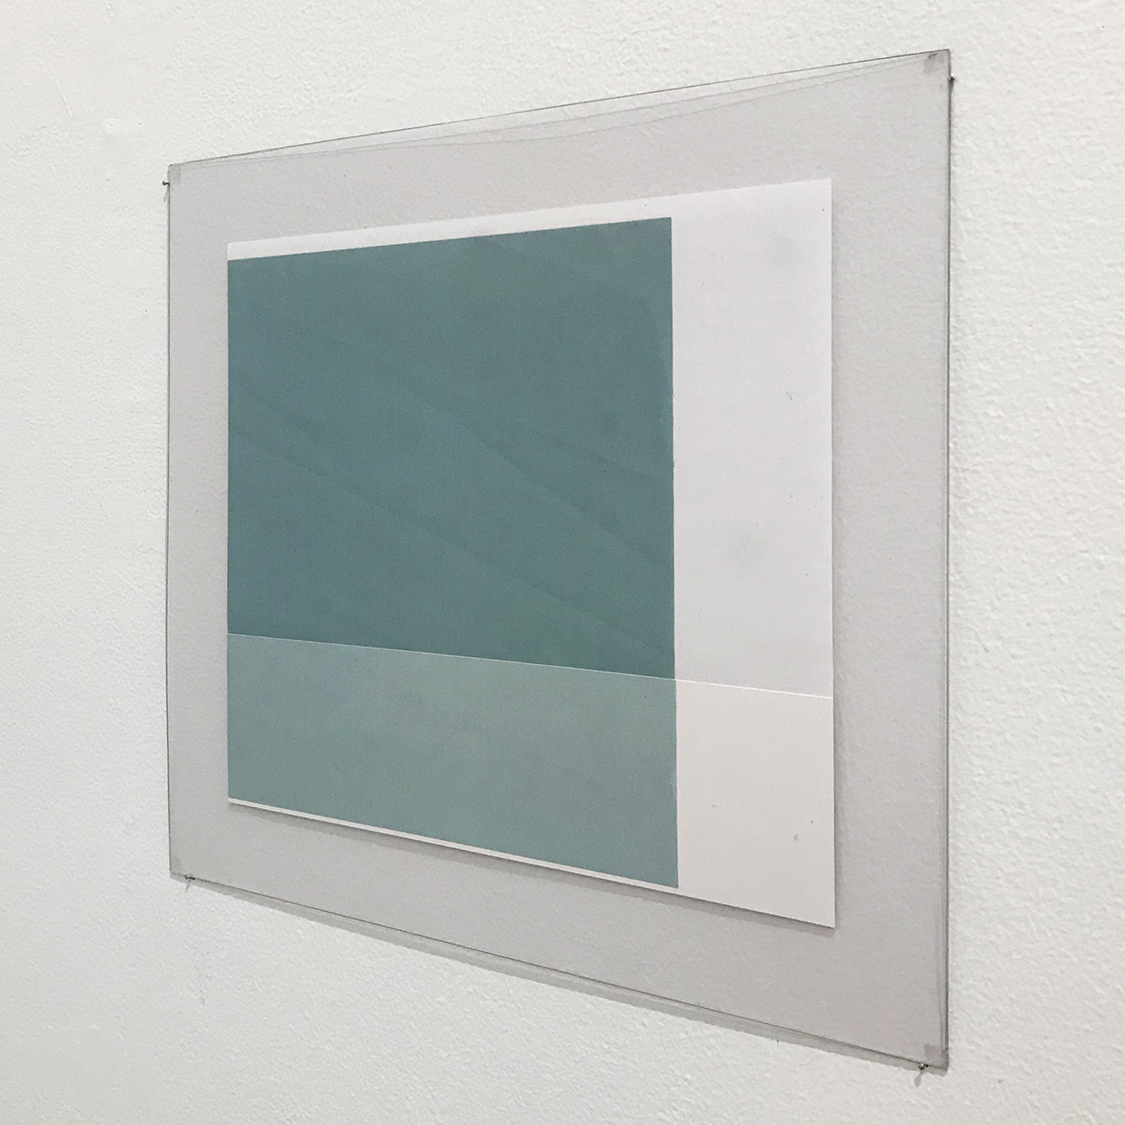 　　　Untitled, Copy paper, color copy, 220 × 205 mm, 2019